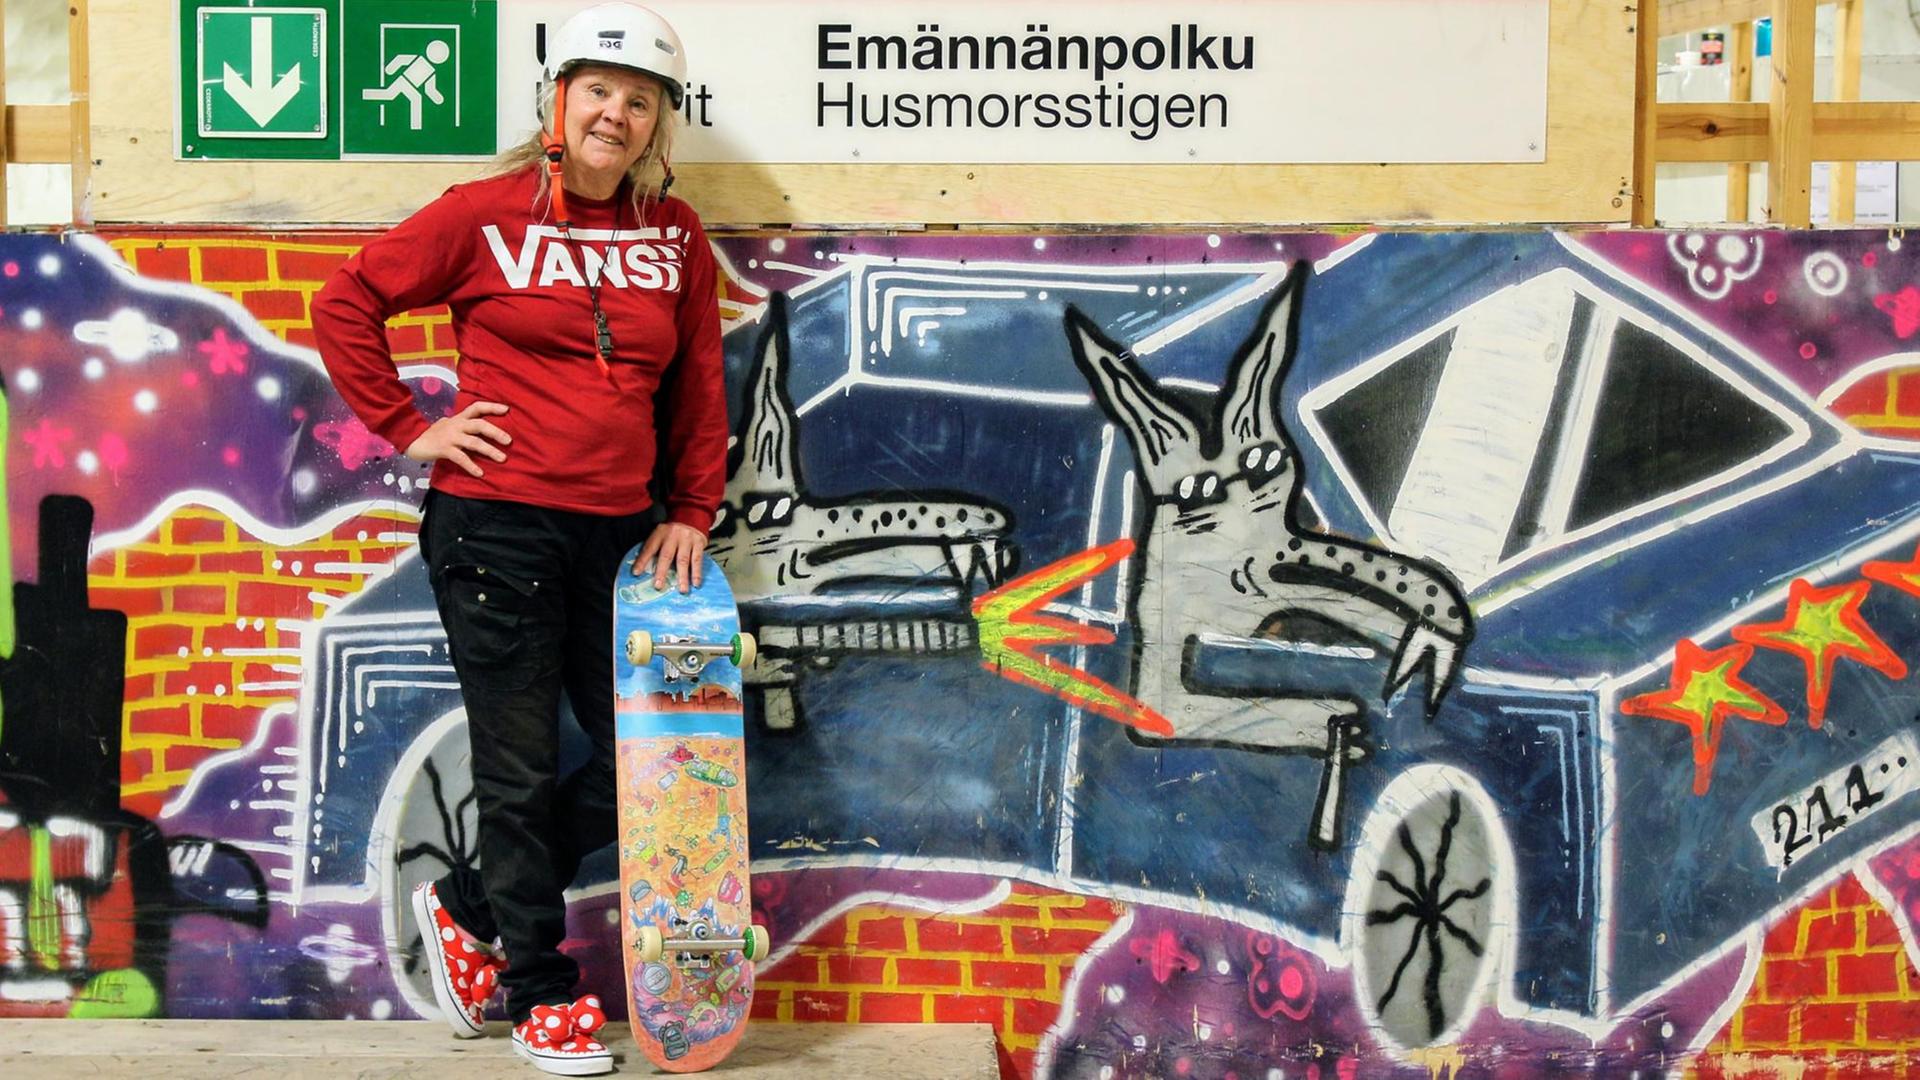 Lena Salmi steht mit rotem Pulli und typischem Skateboard-Helm vor einer bunt besprühten Graffiti-Wand, während ein farbenfrohes Skateboard lässig neben ihr lehnt.